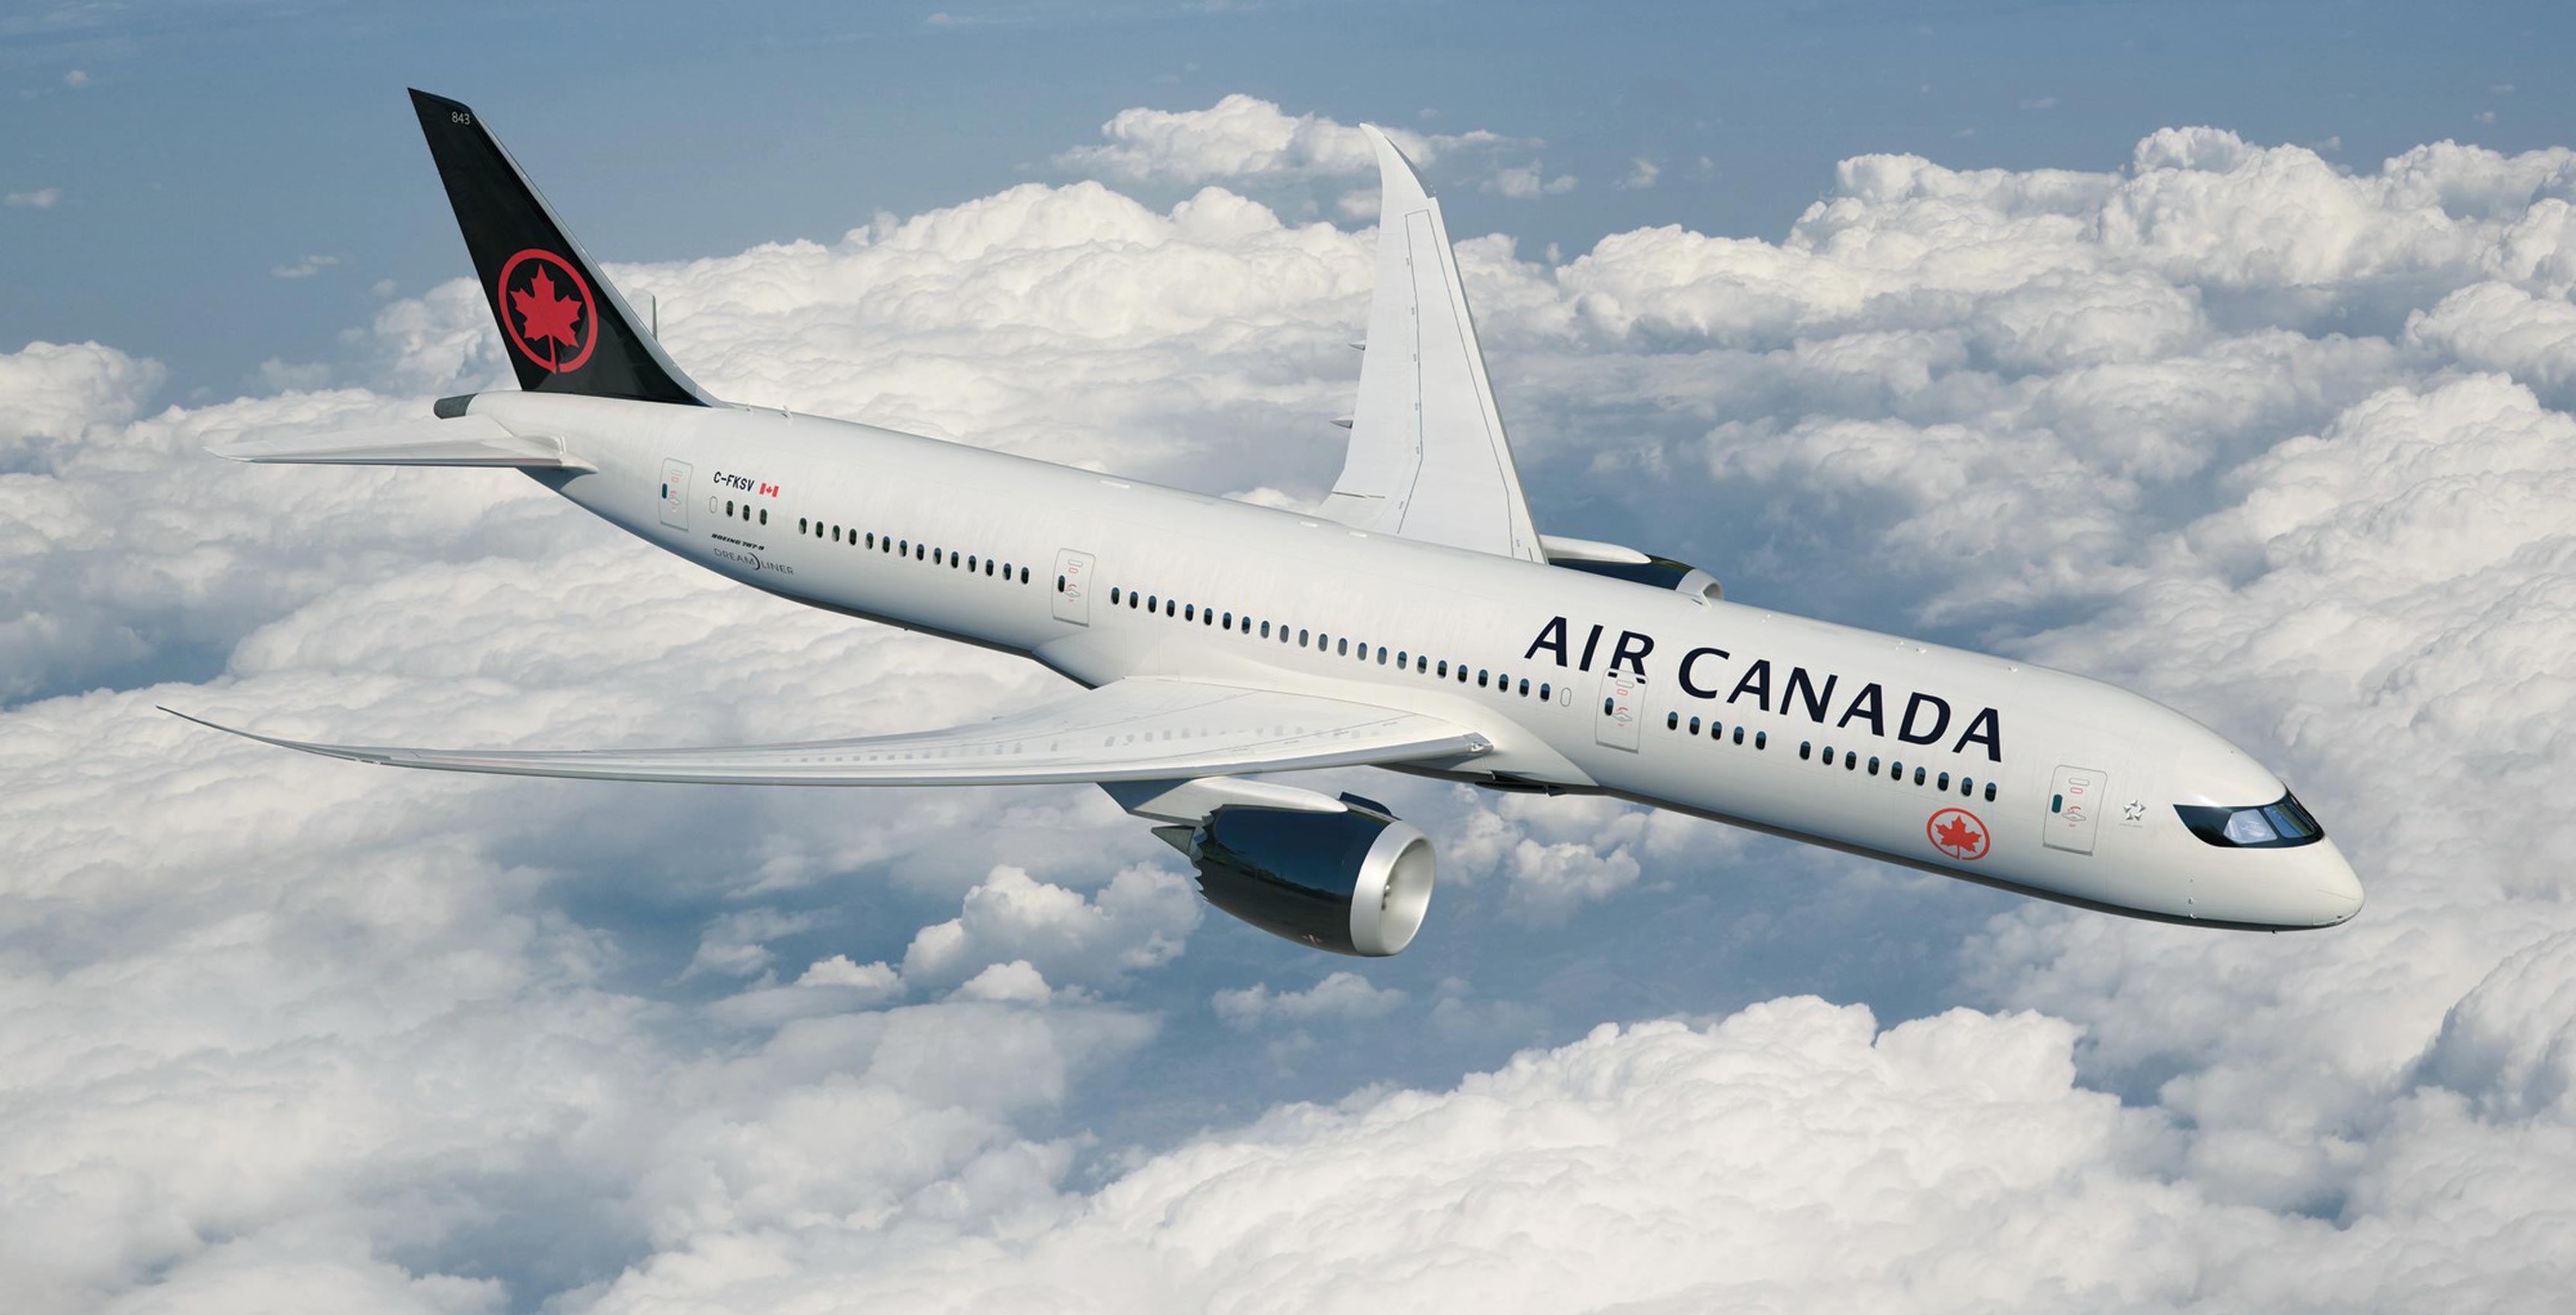 an Air Canada airplane